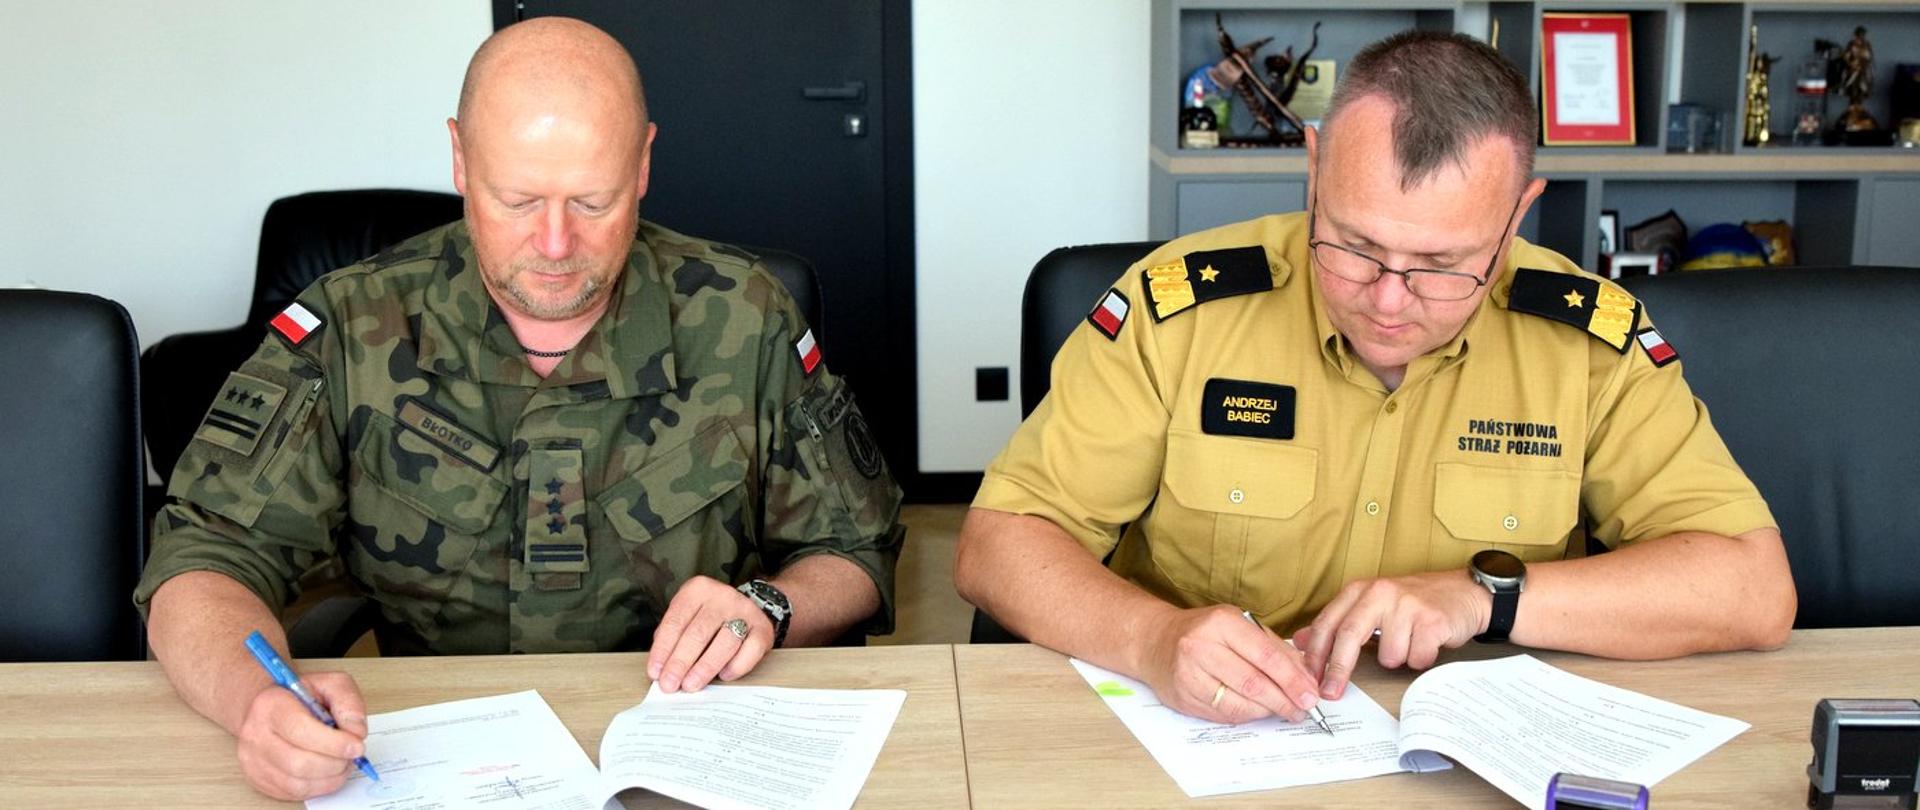 Zdjęcie zrobione w pomieszczeniu. Przy stole siedzą od lewej strony: pułkownik Wojsk Obrony Terytorialnej i oficer Państwowej Straży Pożarnej w stopniu generała. Oficerowie podpisują dokumenty. 